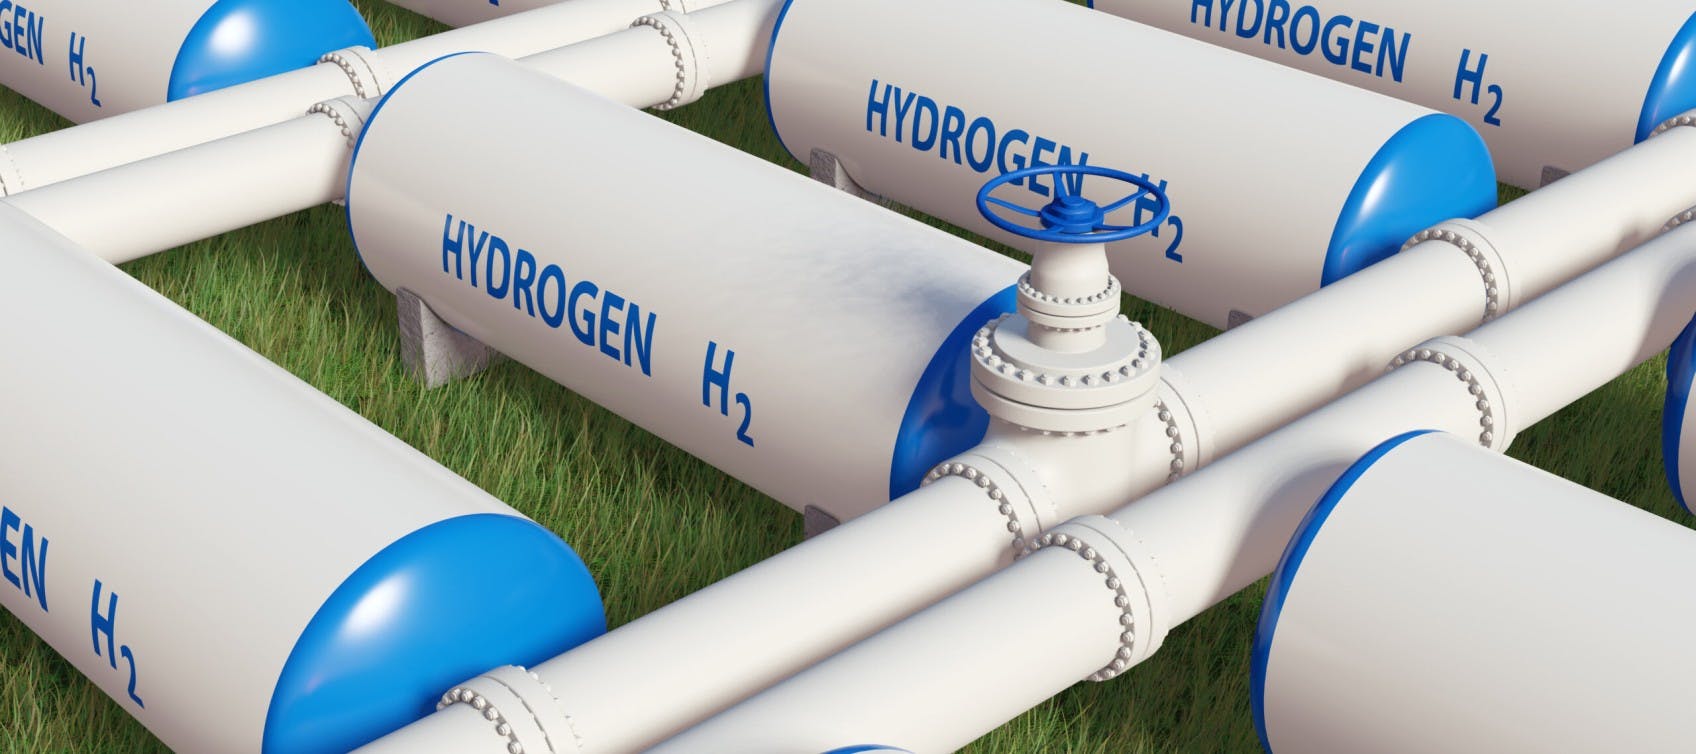 Hydrogen Storage Safety scaled